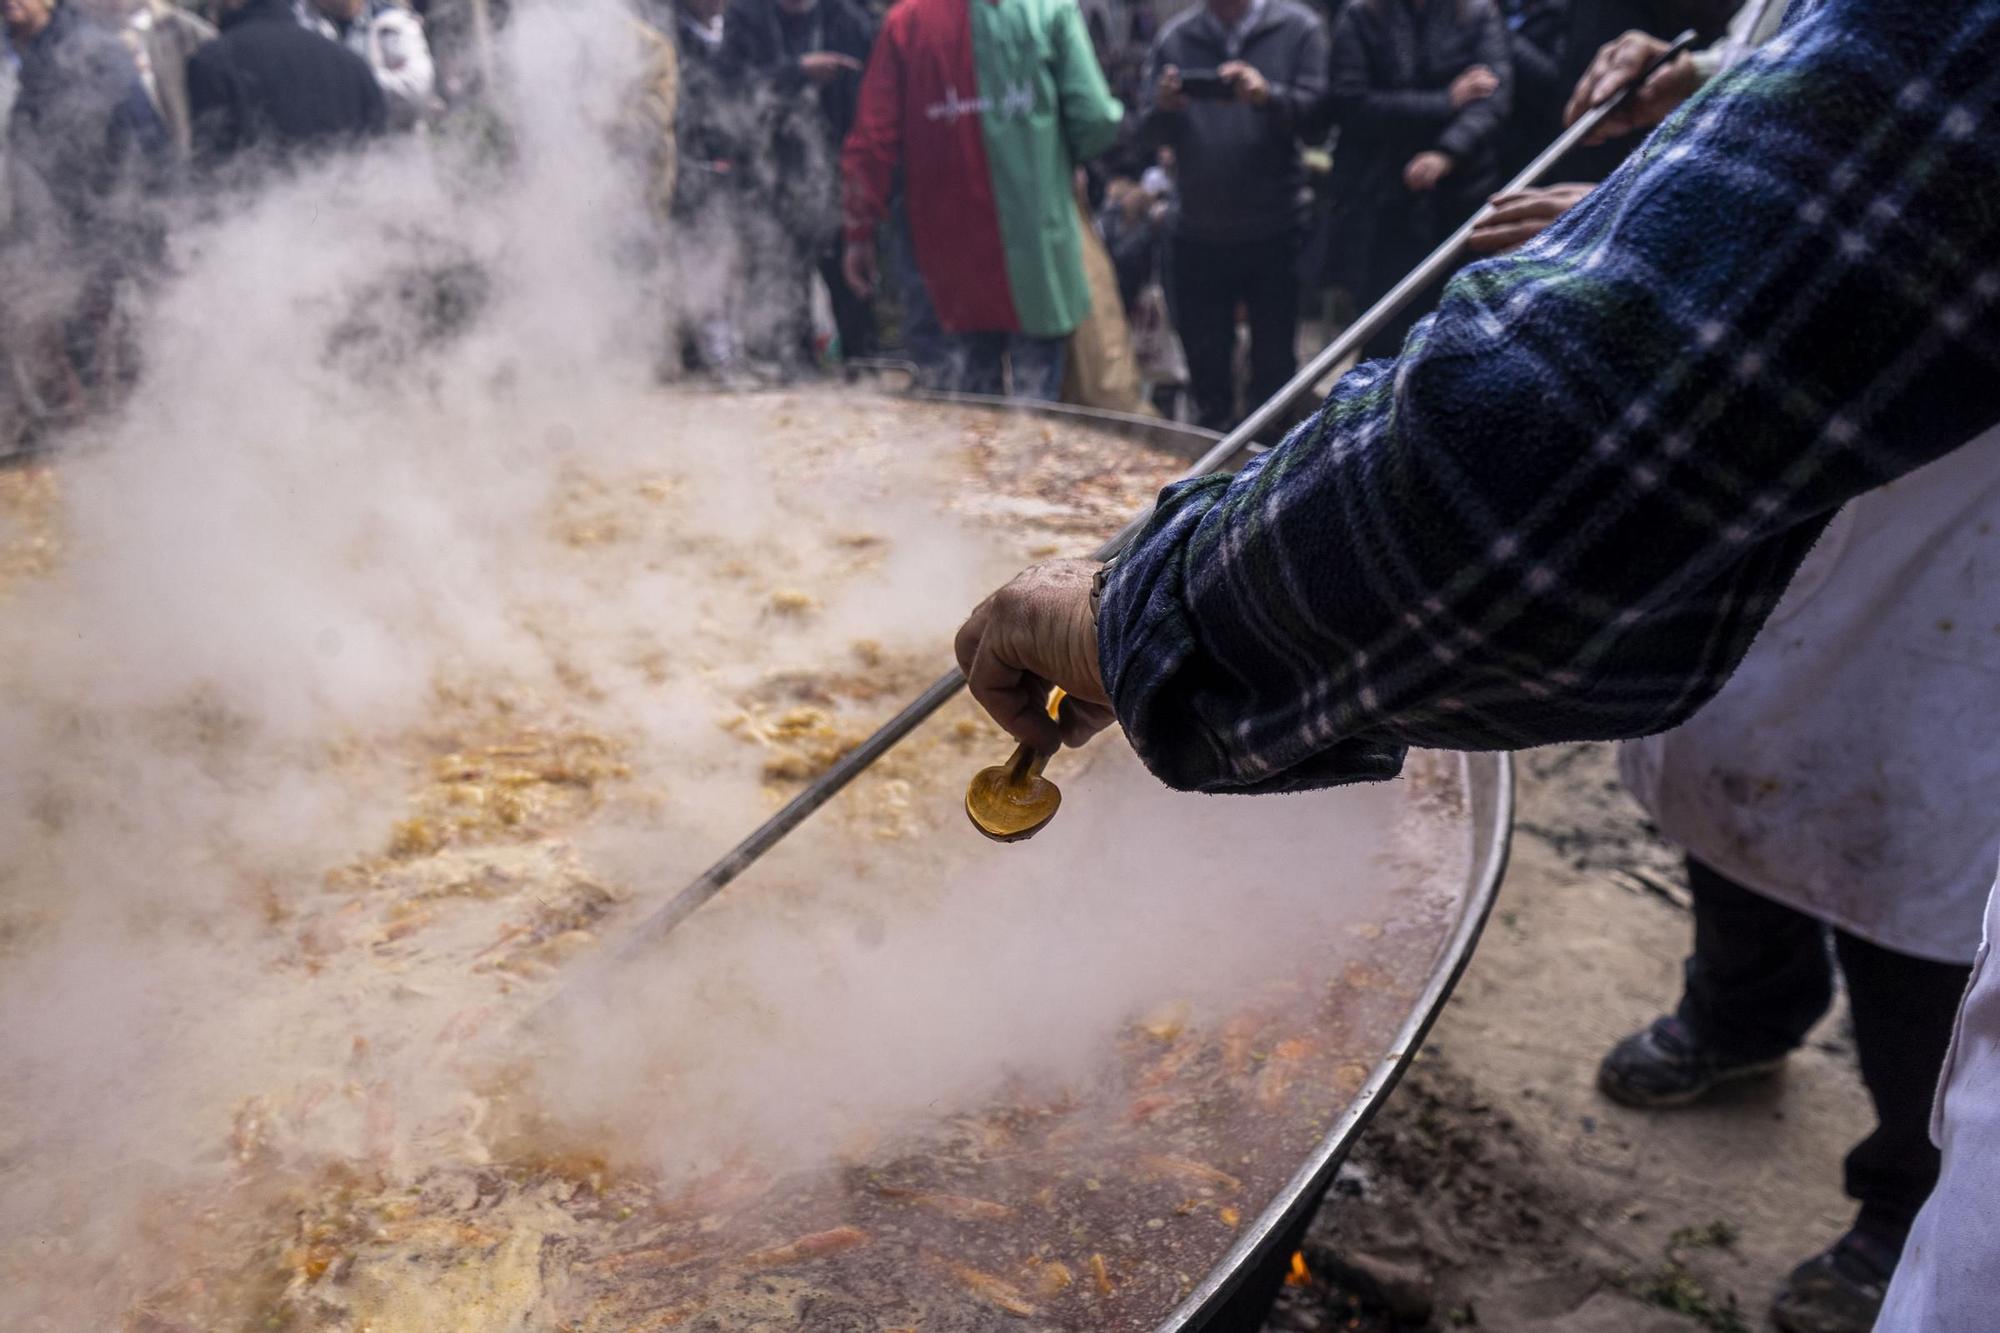 Bagà cuina el seu popular arròs per 2.500 persones